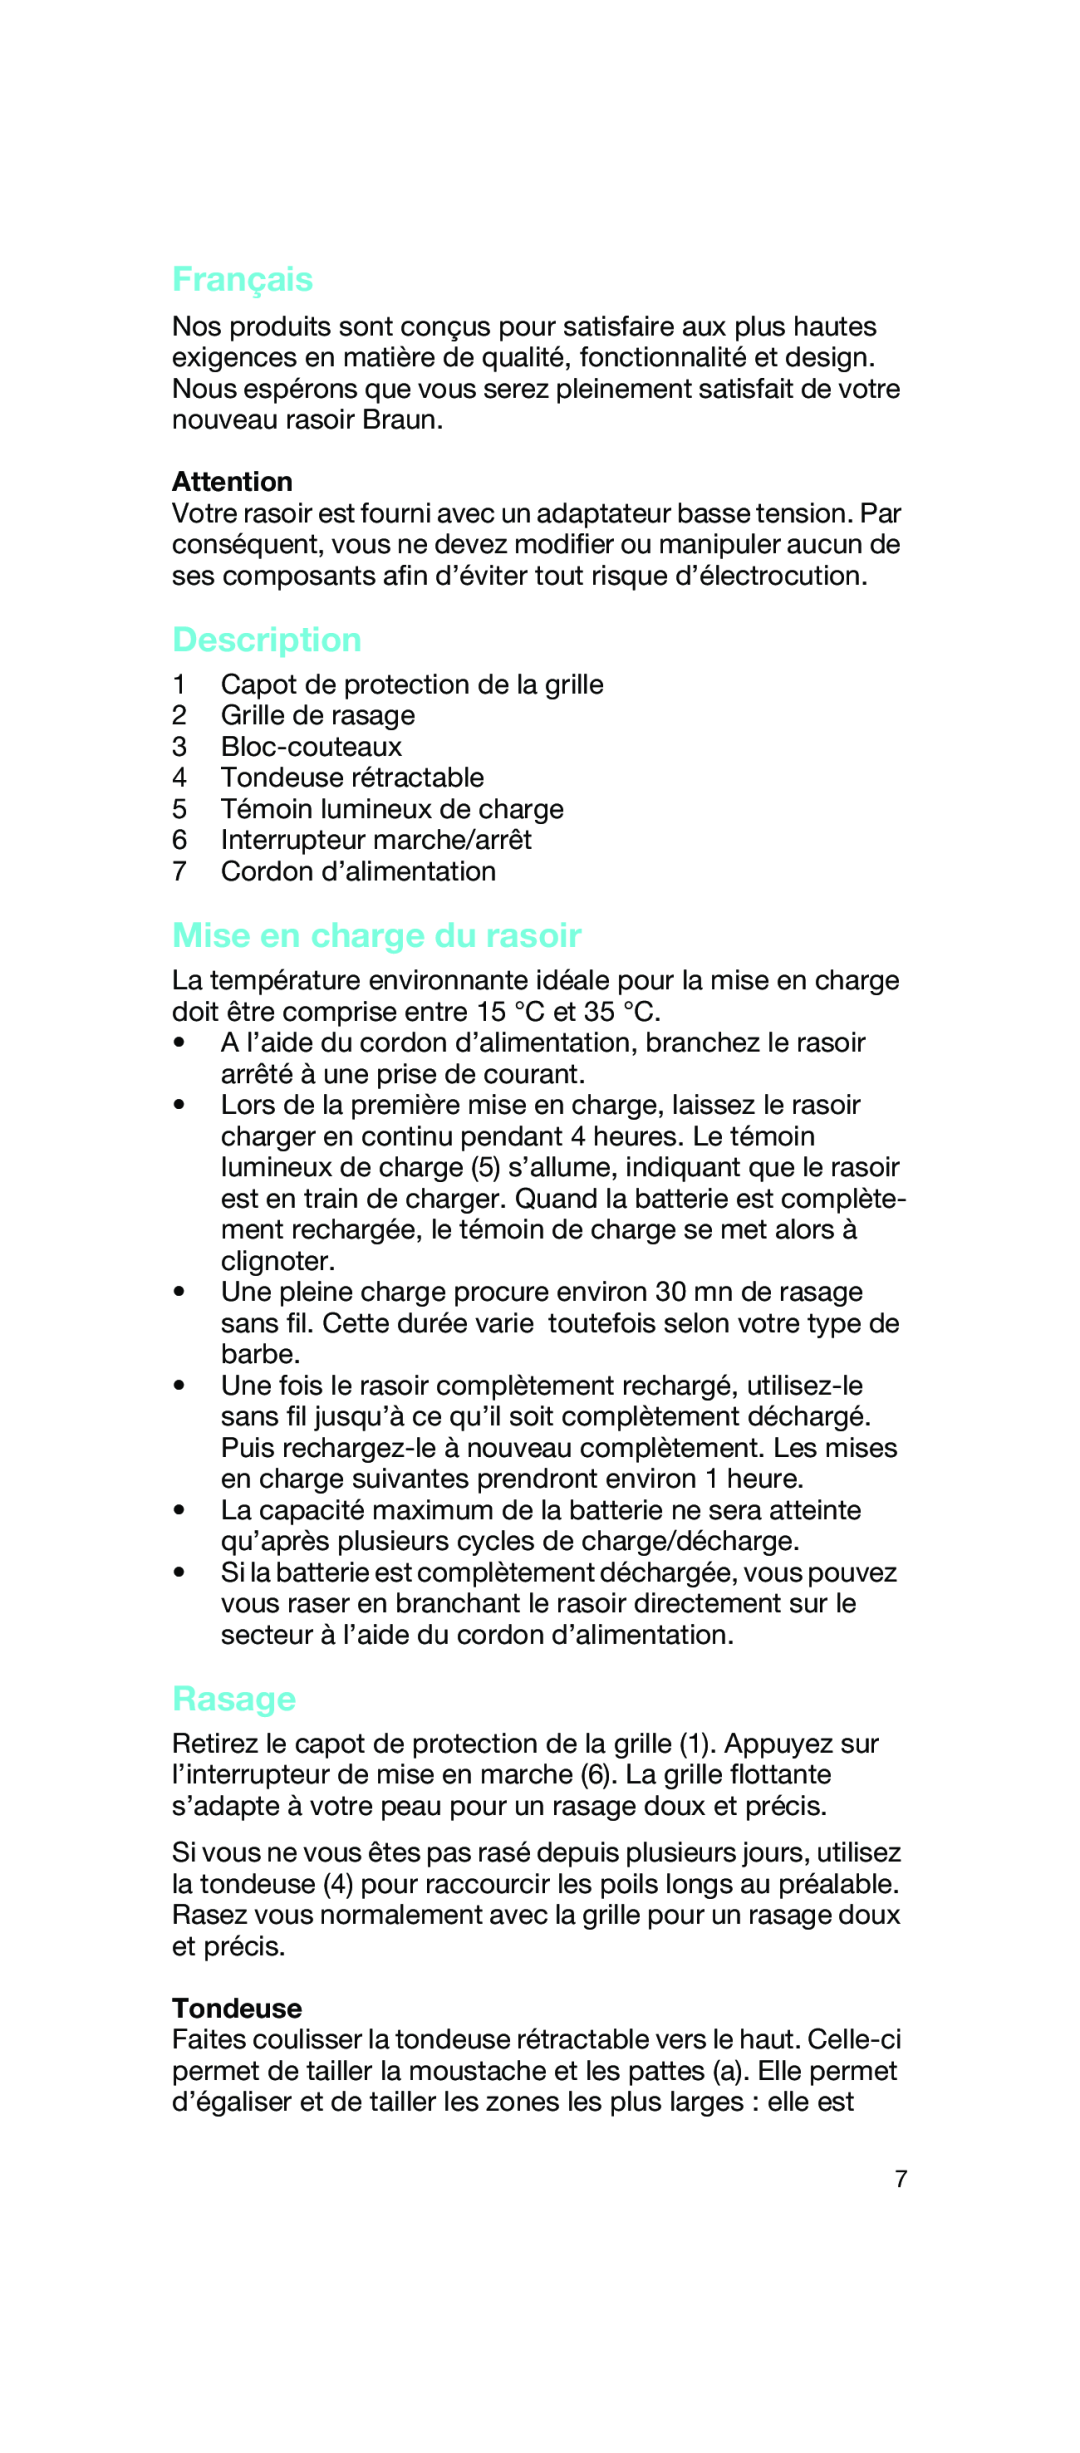 Braun 2675 manual Français, Mise en charge du rasoir, Rasage, Tondeuse, Description 